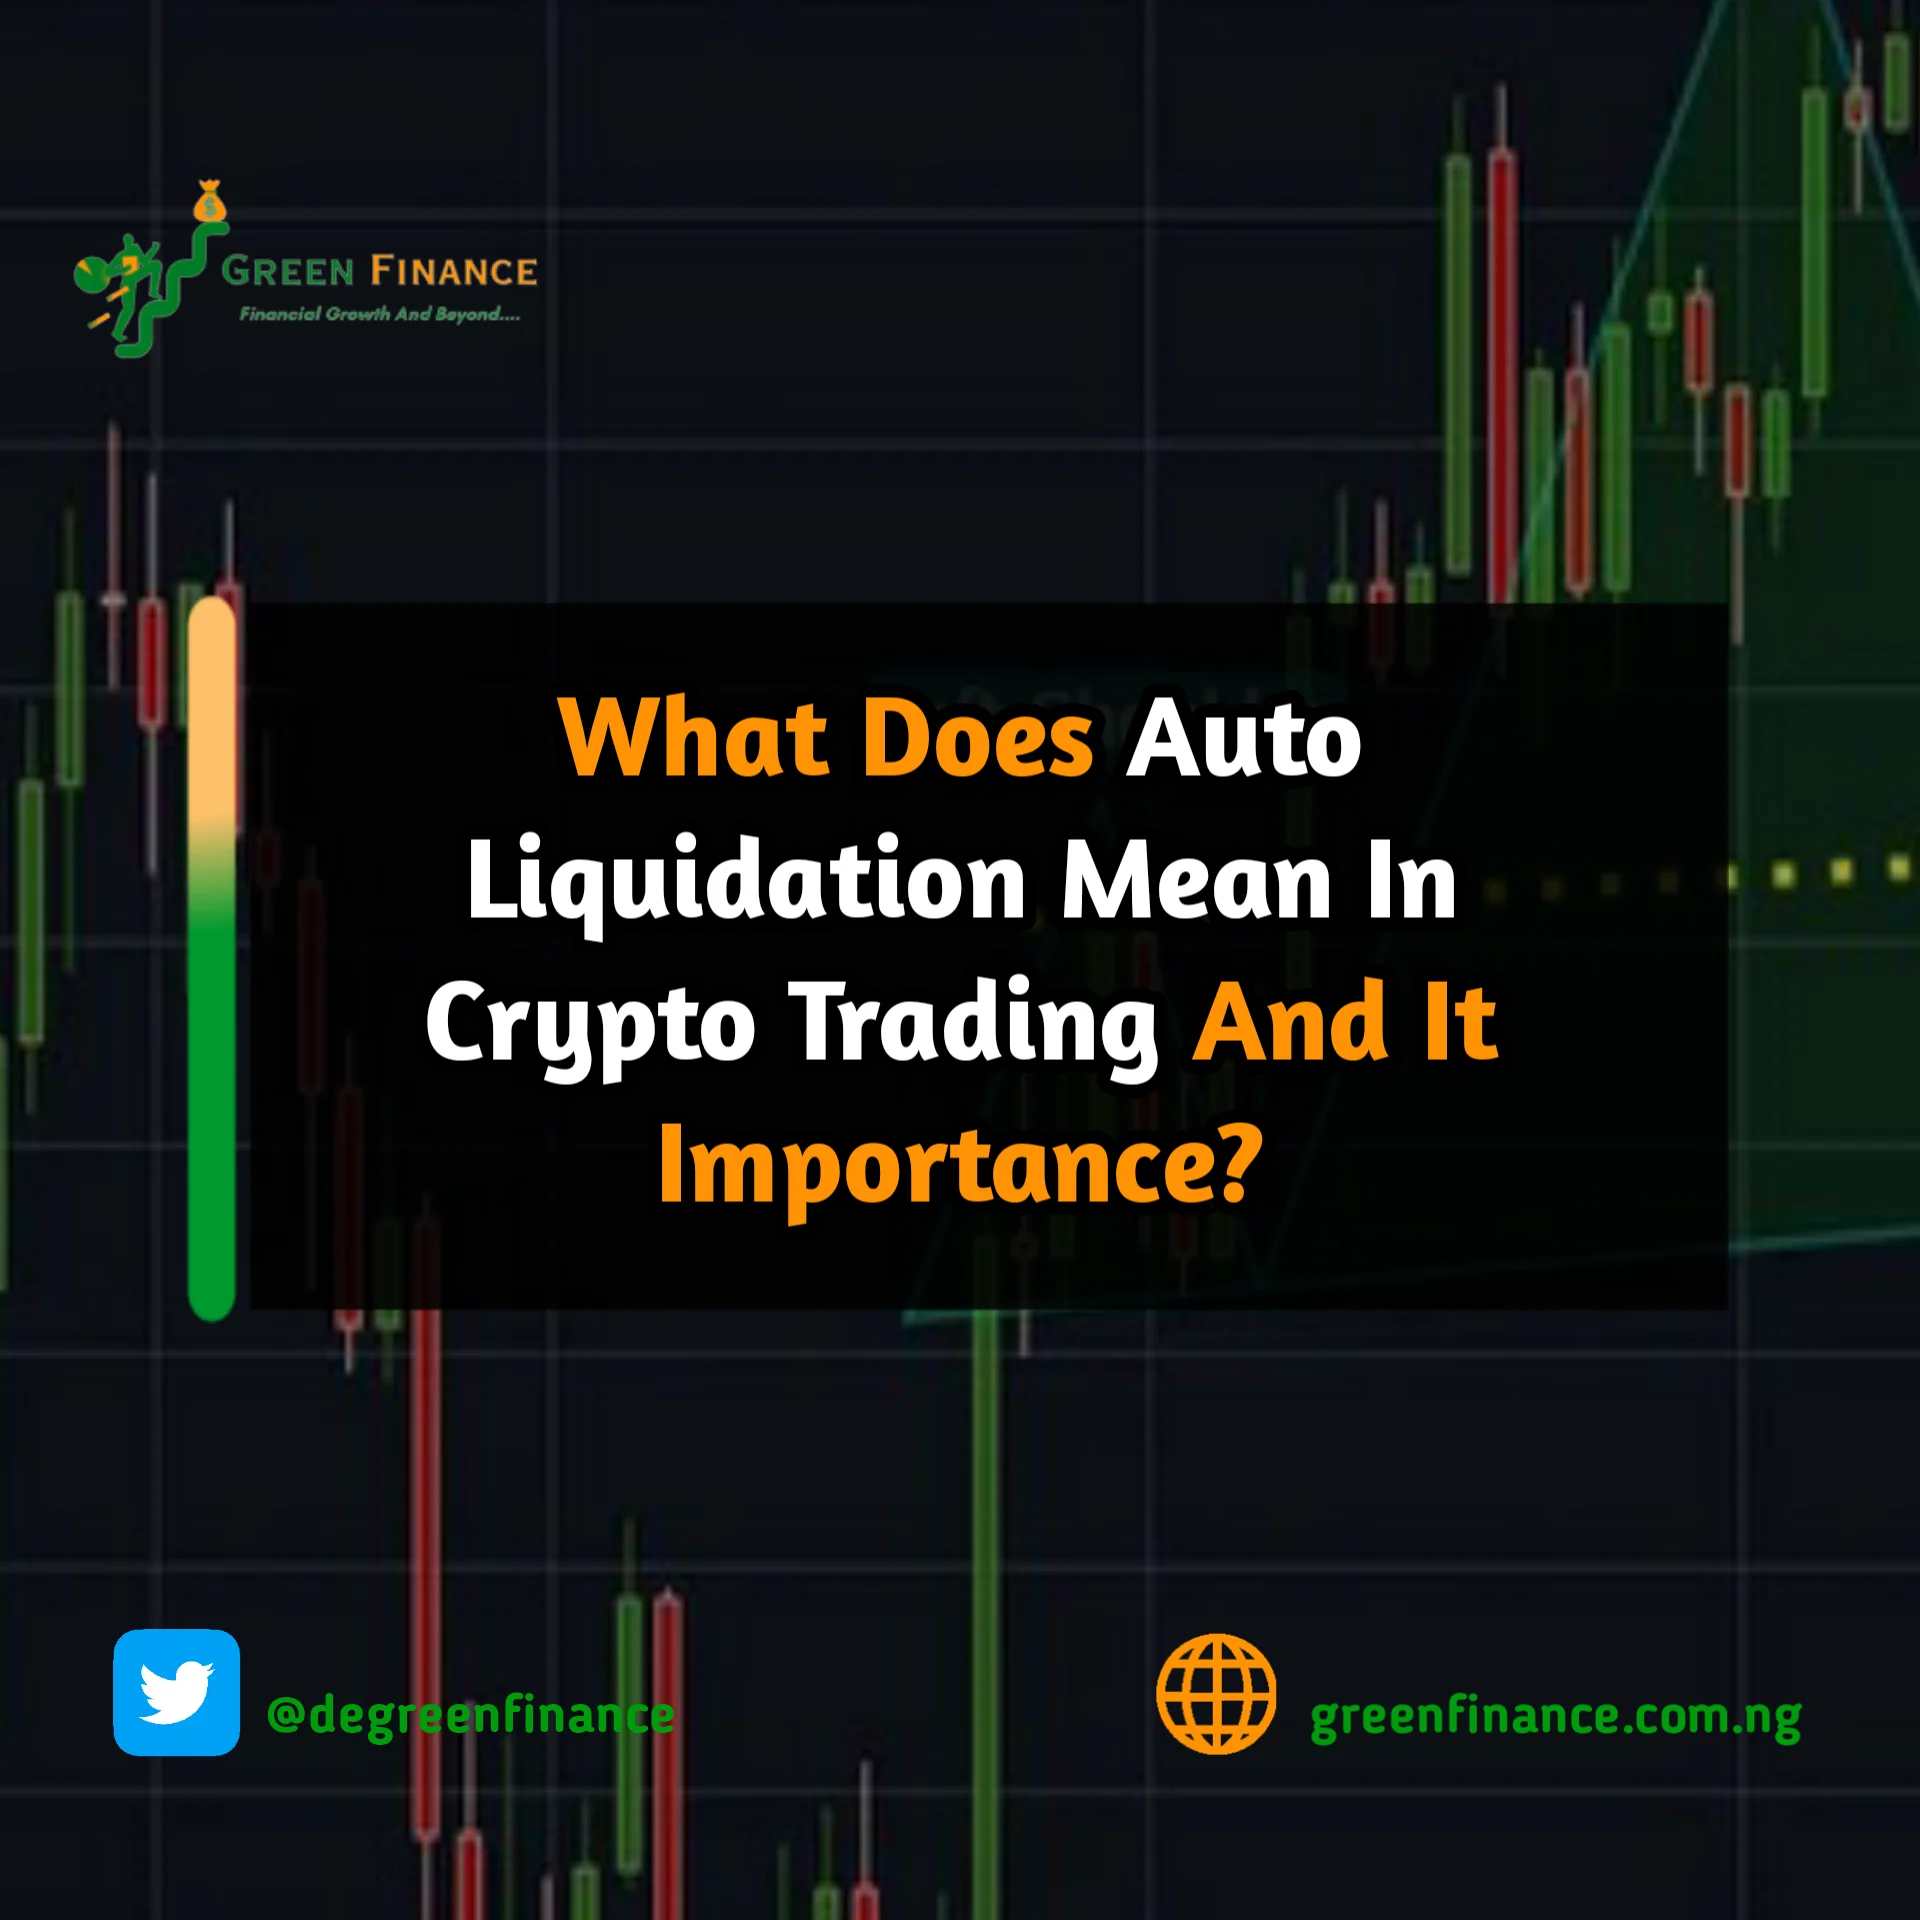 Auto Liquidation